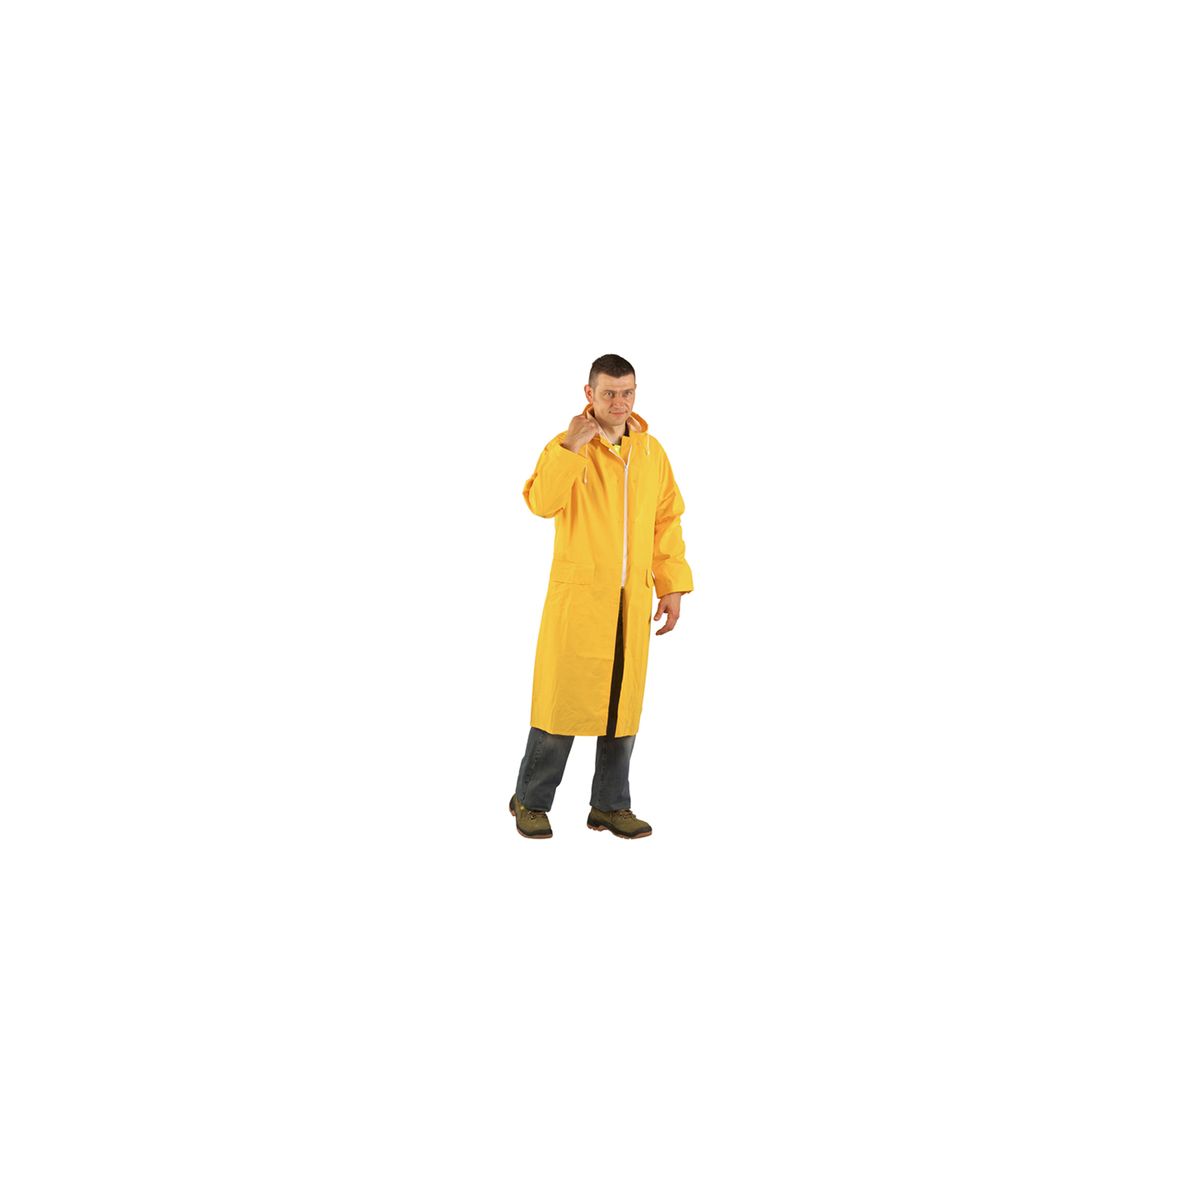 Manteau de pluie CO/PES, jaune, 415g/m² - COVERGUARD - Taille 3XL 0